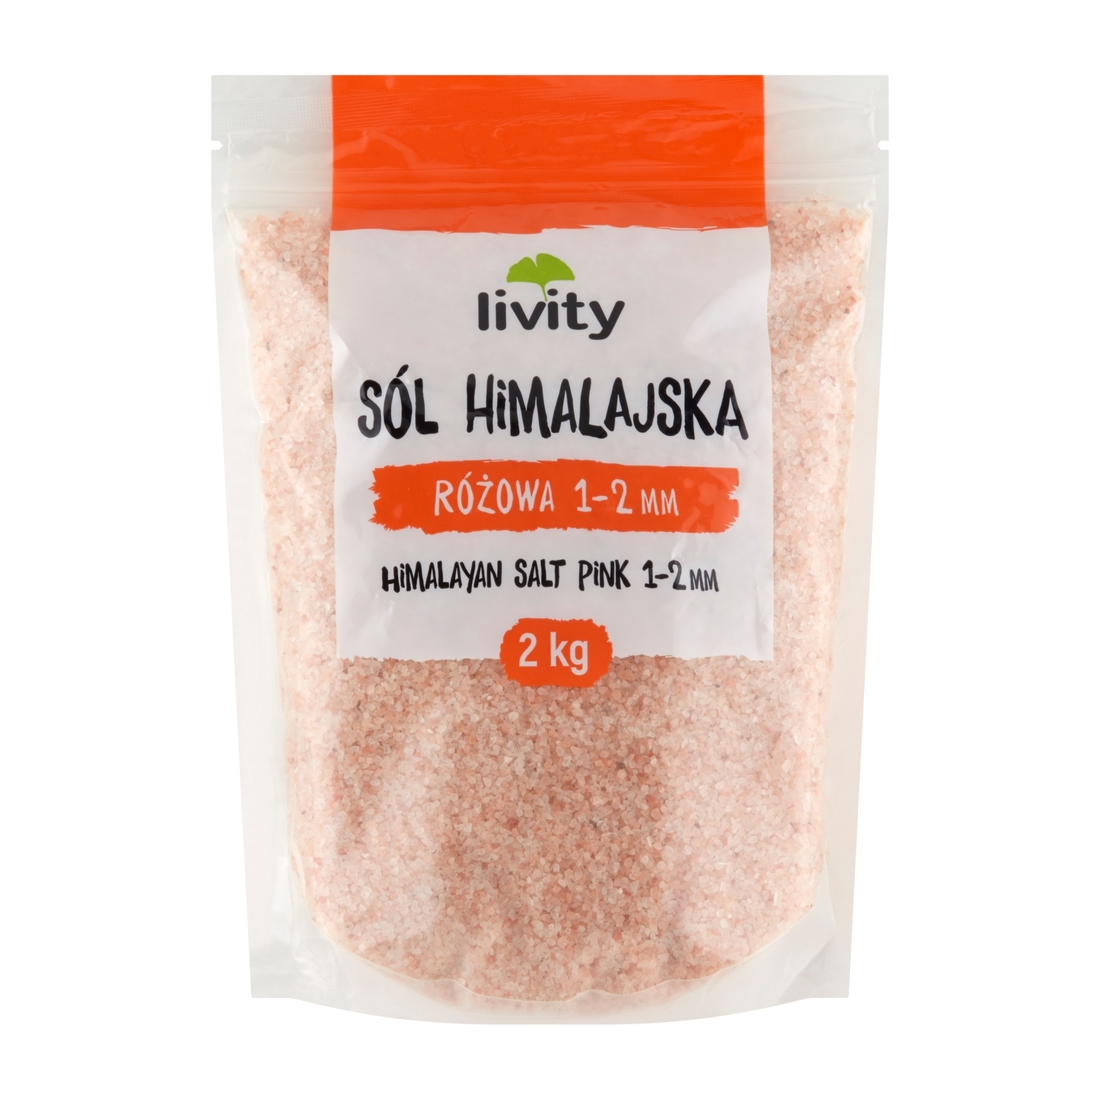 Sól himalajska różowa 1-2mm 2kg Livity Livity